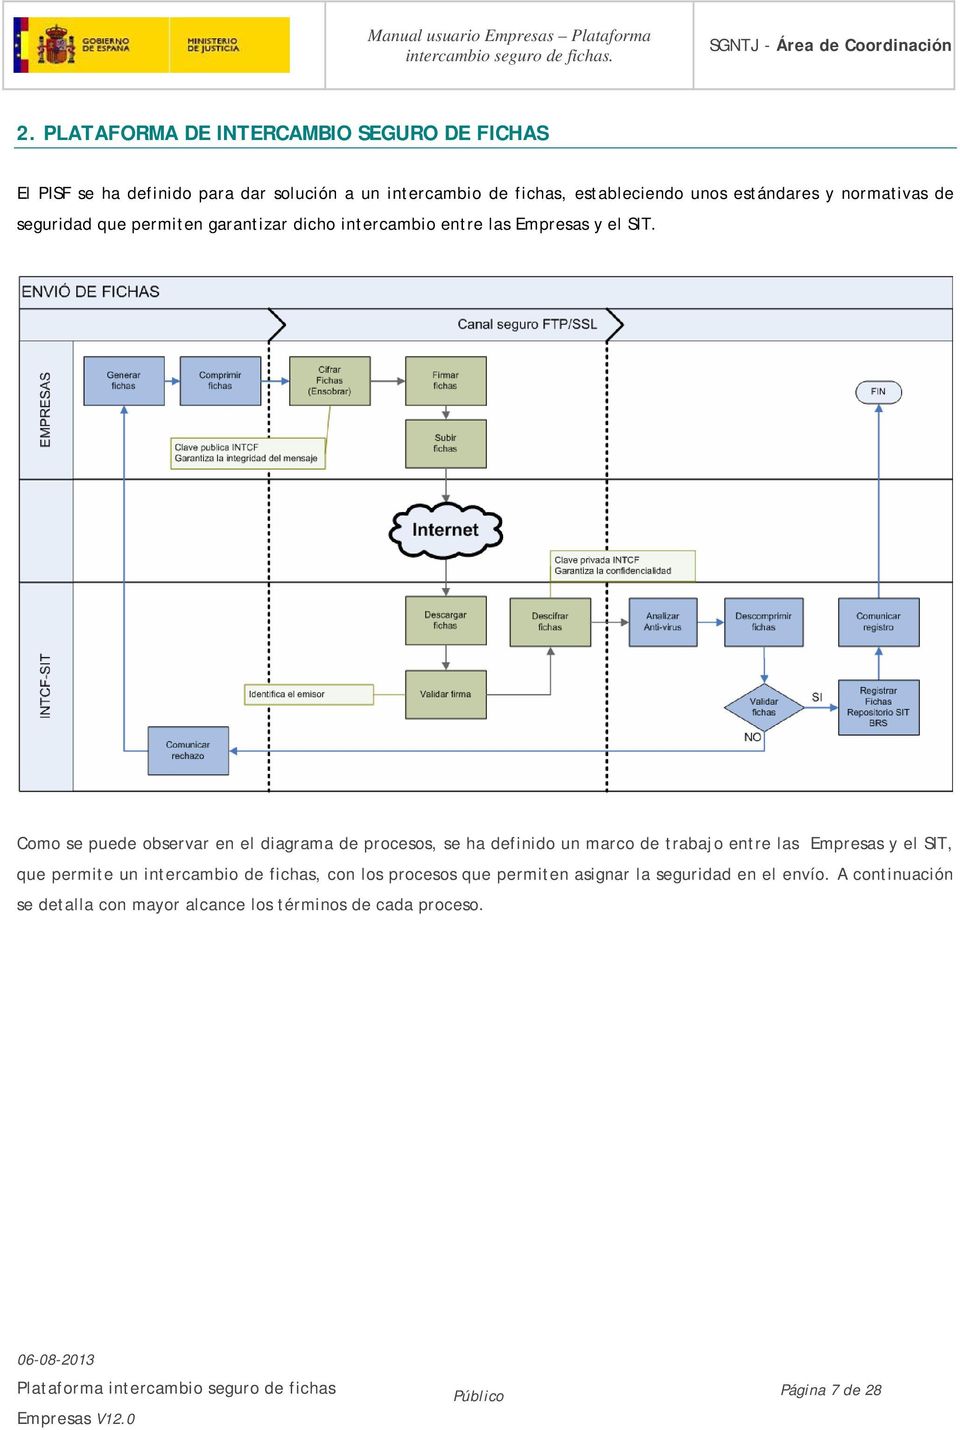 Como se puede observar en el diagrama de procesos, se ha definido un marco de trabajo entre las Empresas y el SIT, que permite un